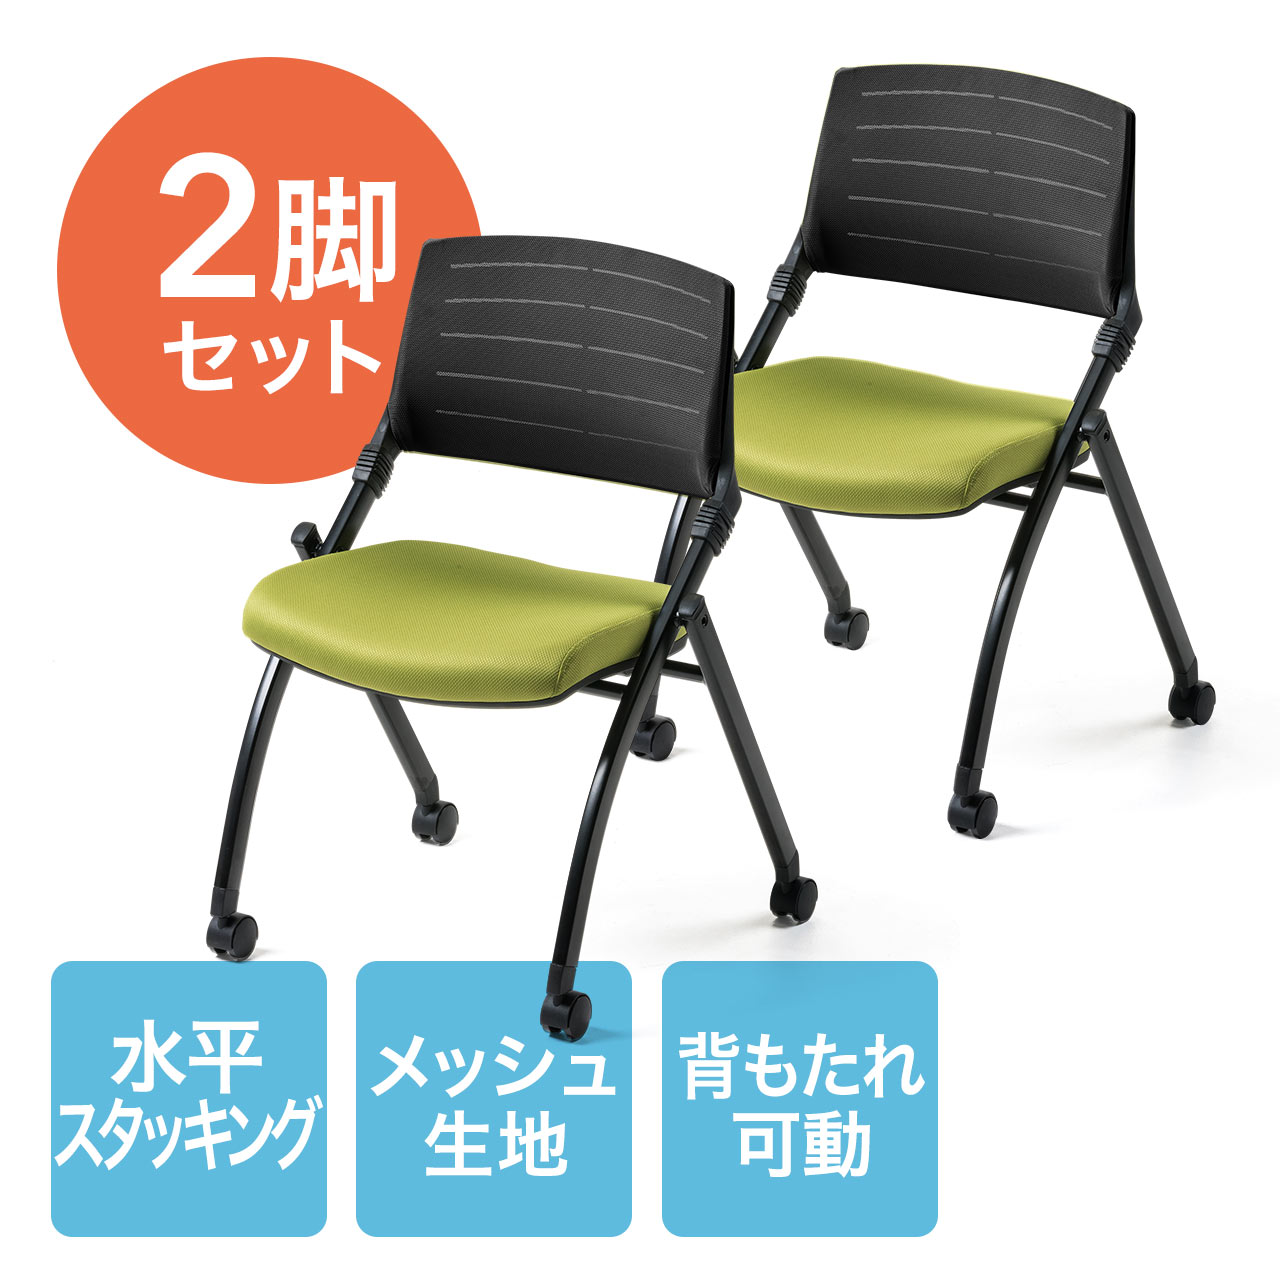 ミーティングチェア 5本脚 布 光触媒 キャスター付き 会議椅子